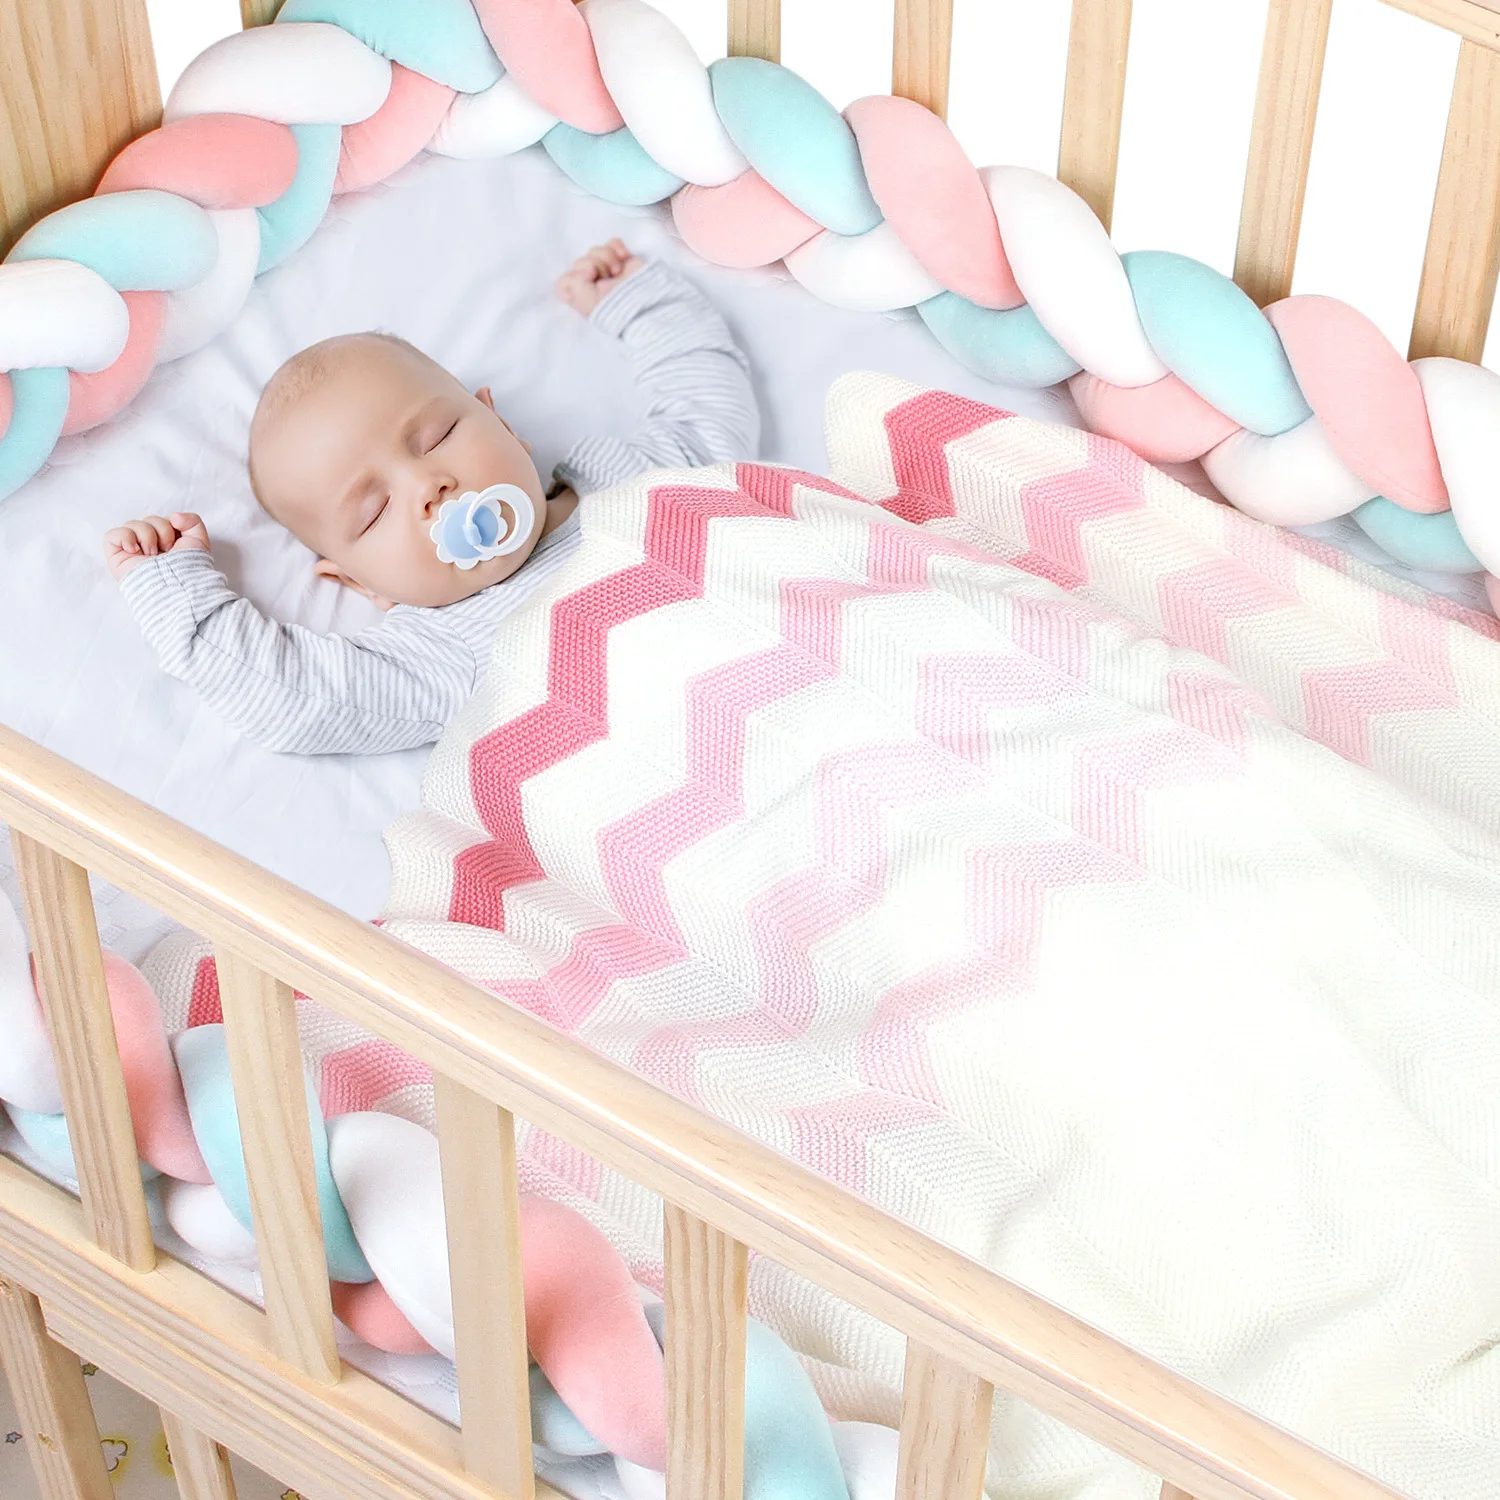 Одеяло для новорожденного, мягкое, Infantil, пеленка для новорожденных, обертывание, постельные принадлежности, одеяла для малышей, Детские